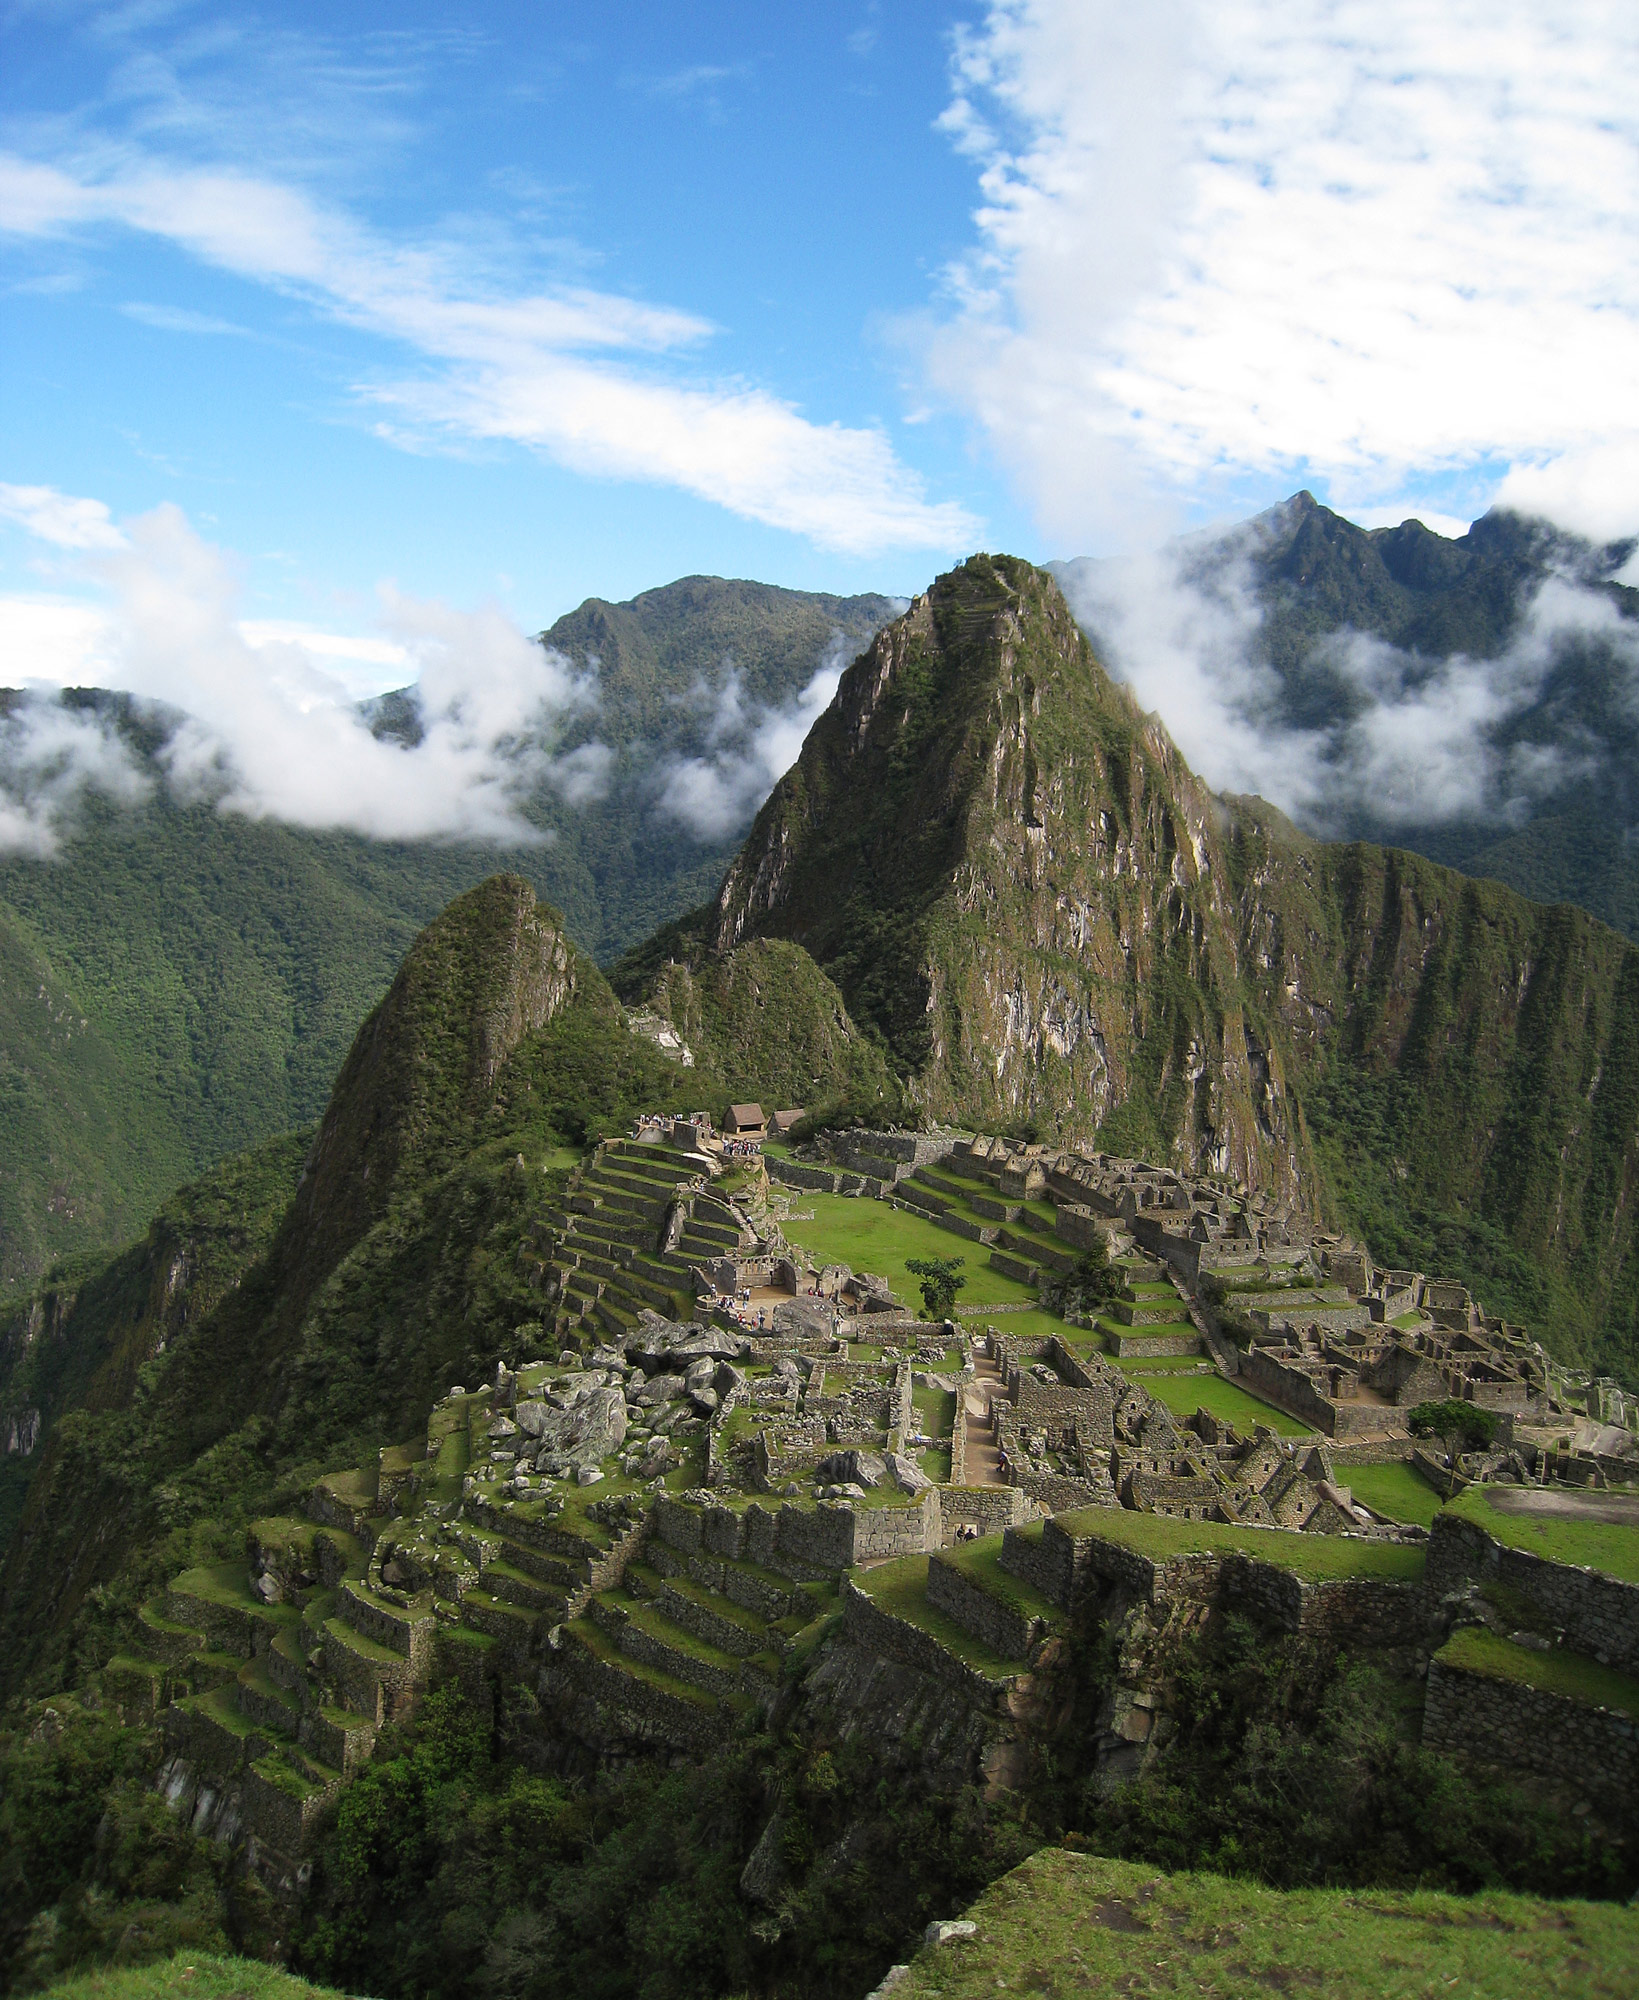 Peru legismertebb ősi romjai, Machu Picchu. A Flickr felhasználó Icelight (CC BY) fotója.